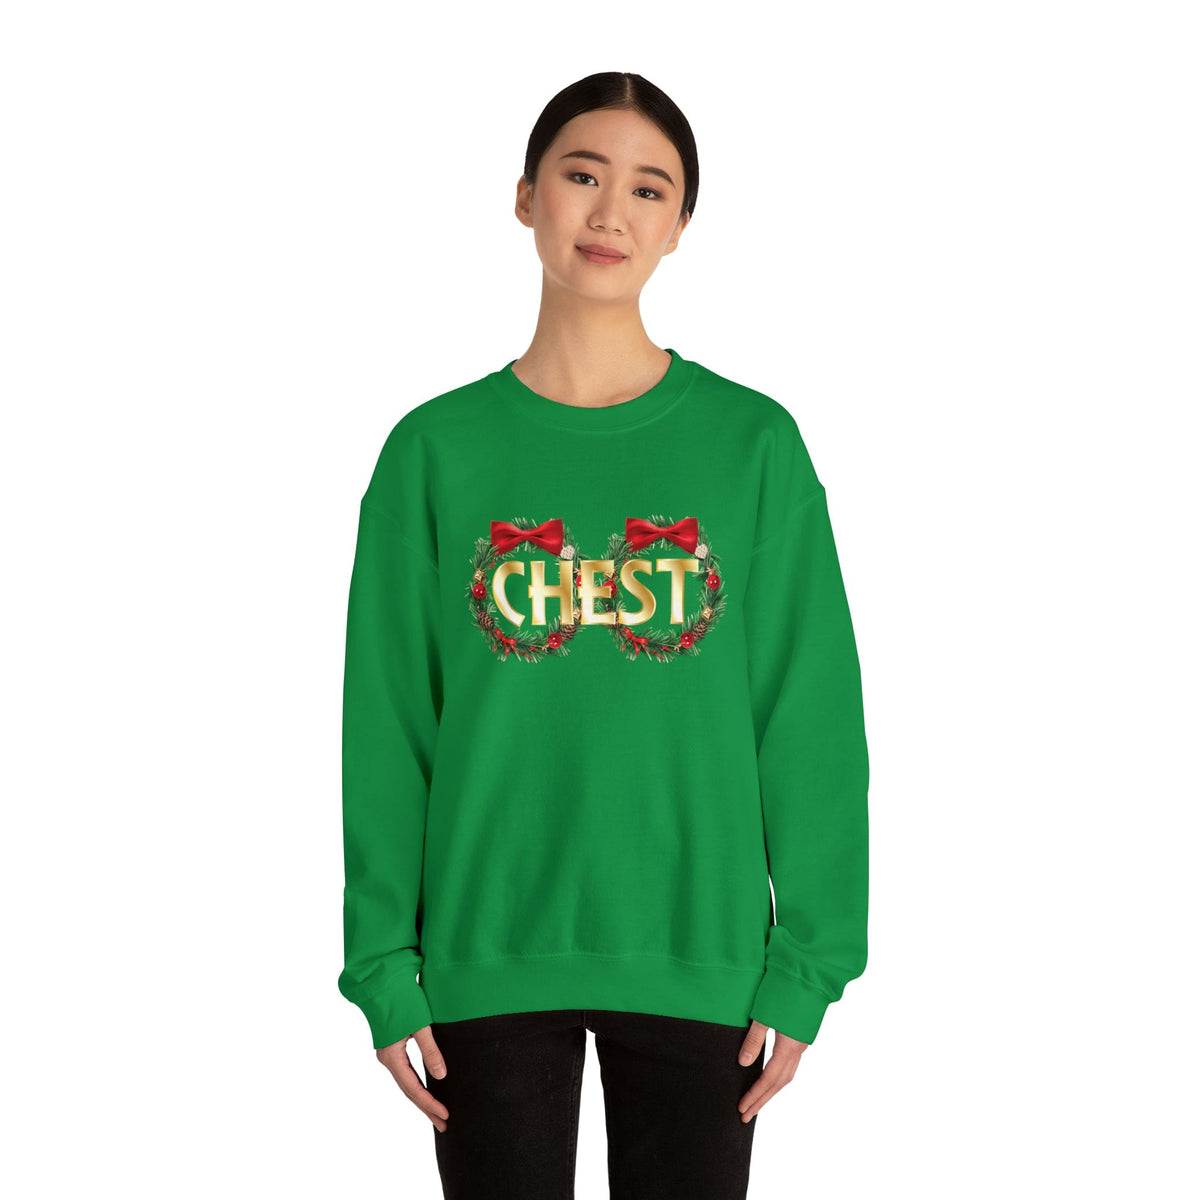 Chest v2 Sweatshirt